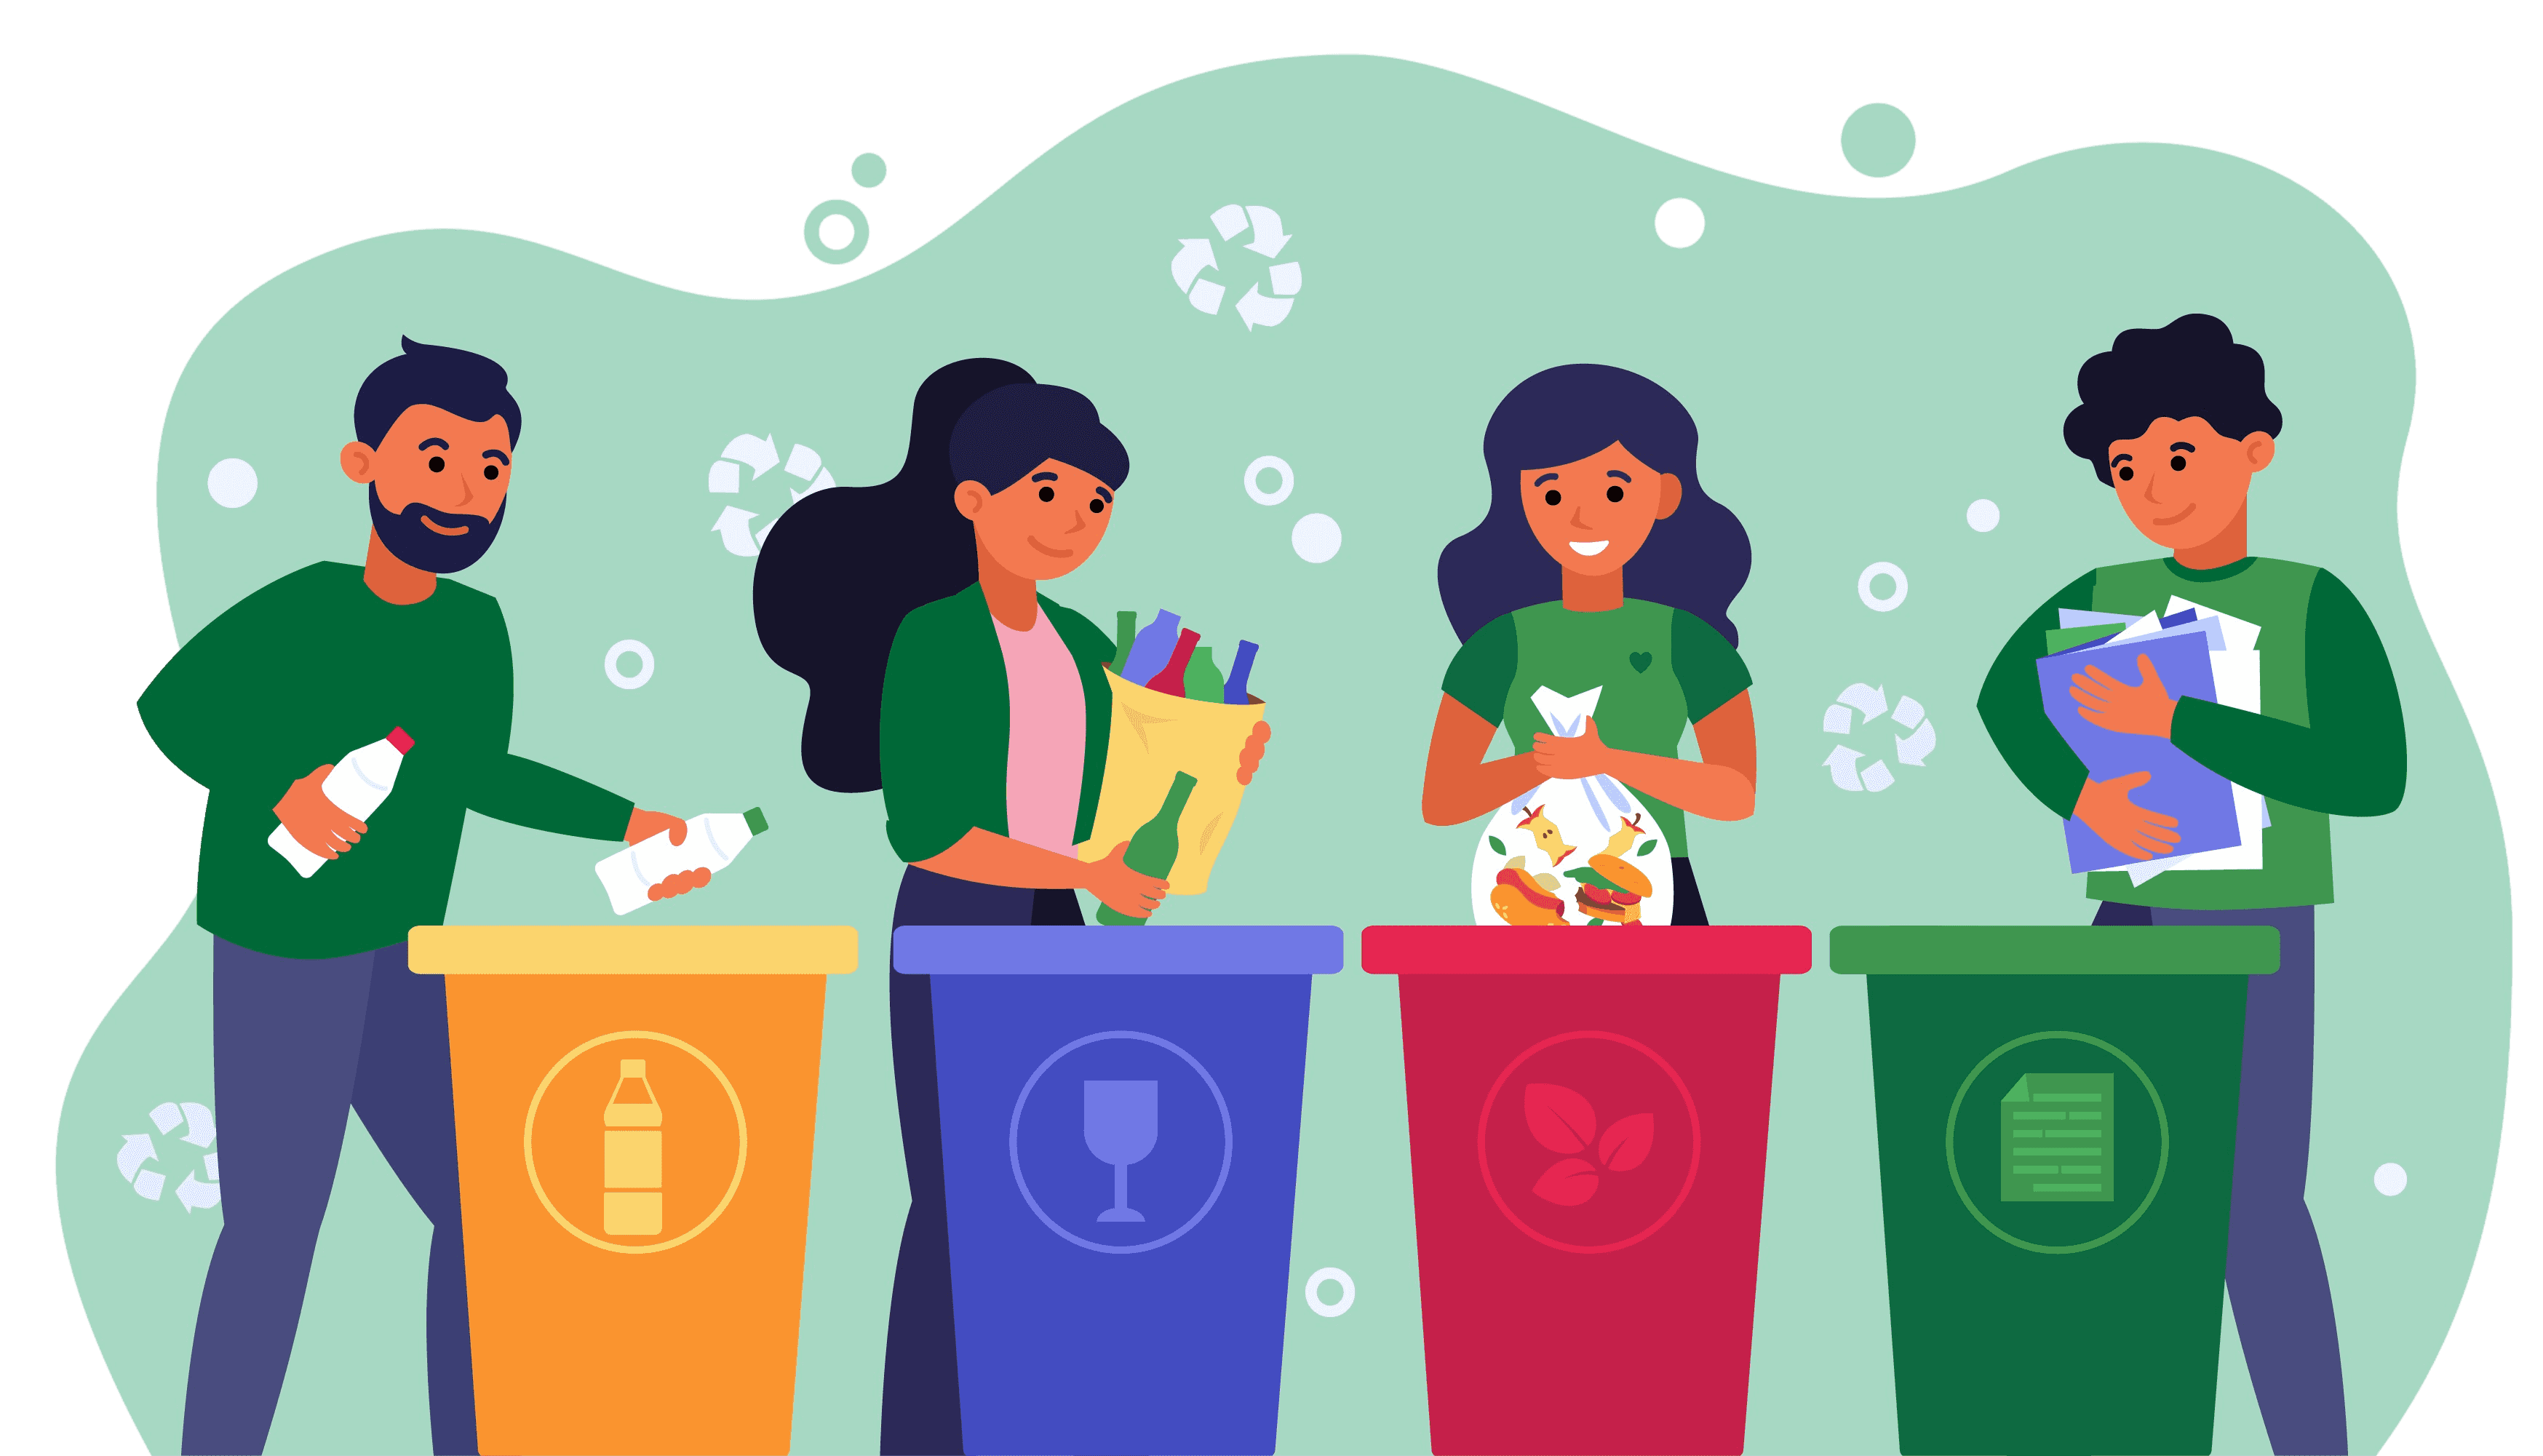 Duas garotas ao lado de uma lata de lixo, uma garota com uma vassoura na mão, outra com celular uma garrafa de água em uma mão e tirando uma selfie com a outra